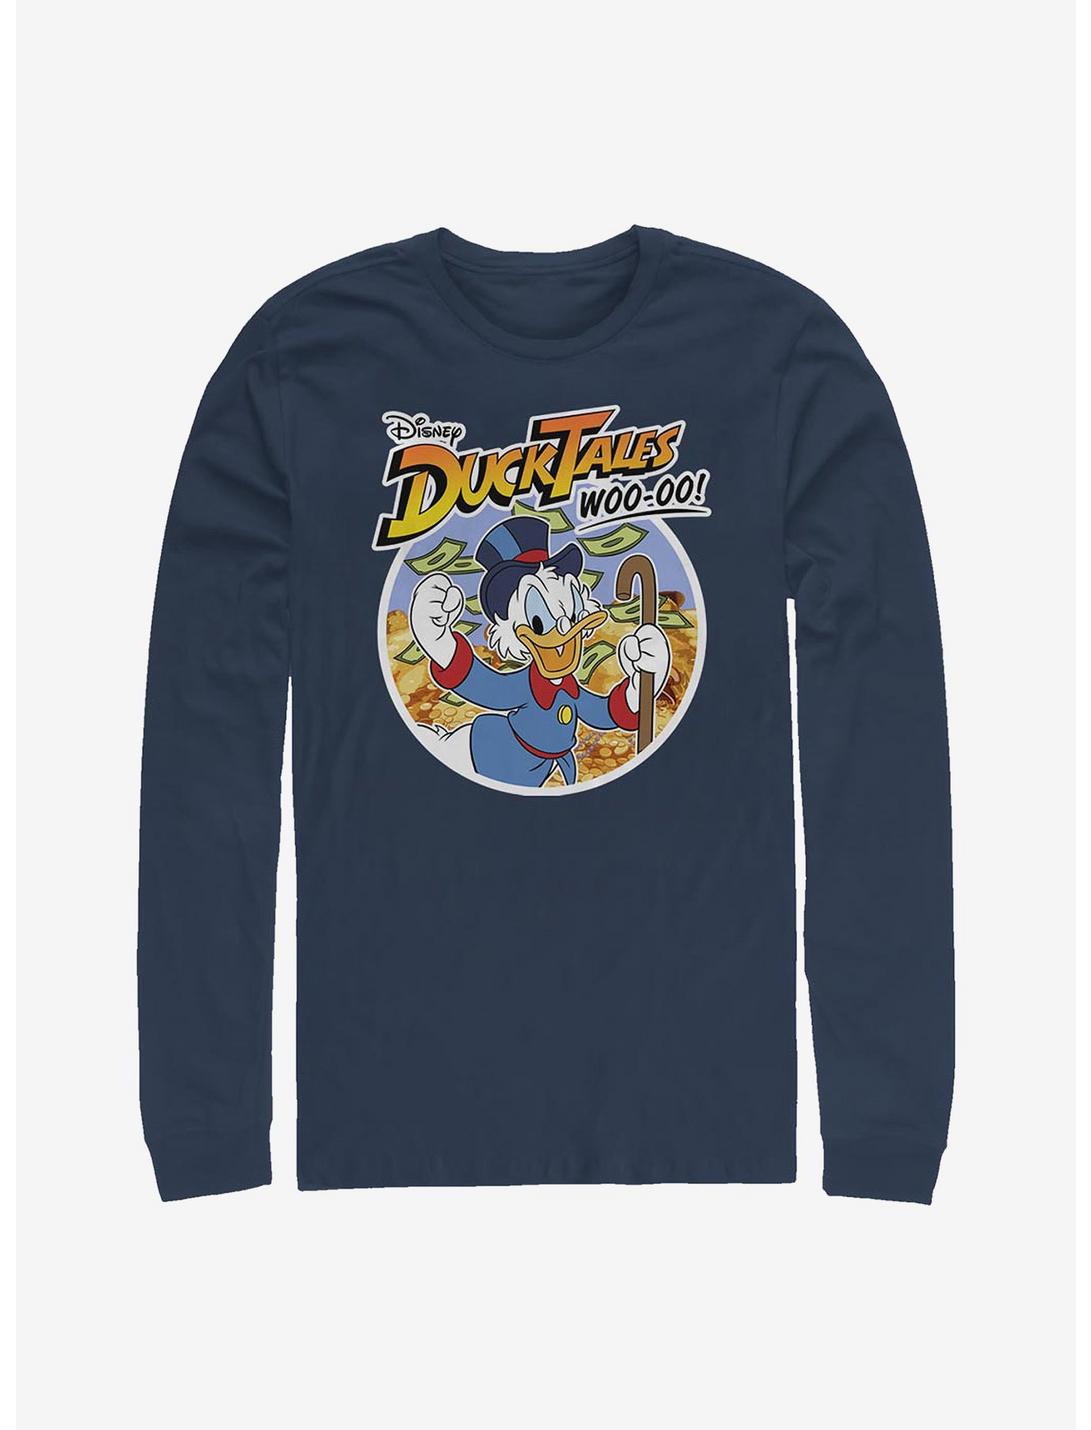 Disney Ducktales Scrooge Woo-oo Long-Sleeve T-Shirt, NAVY, hi-res